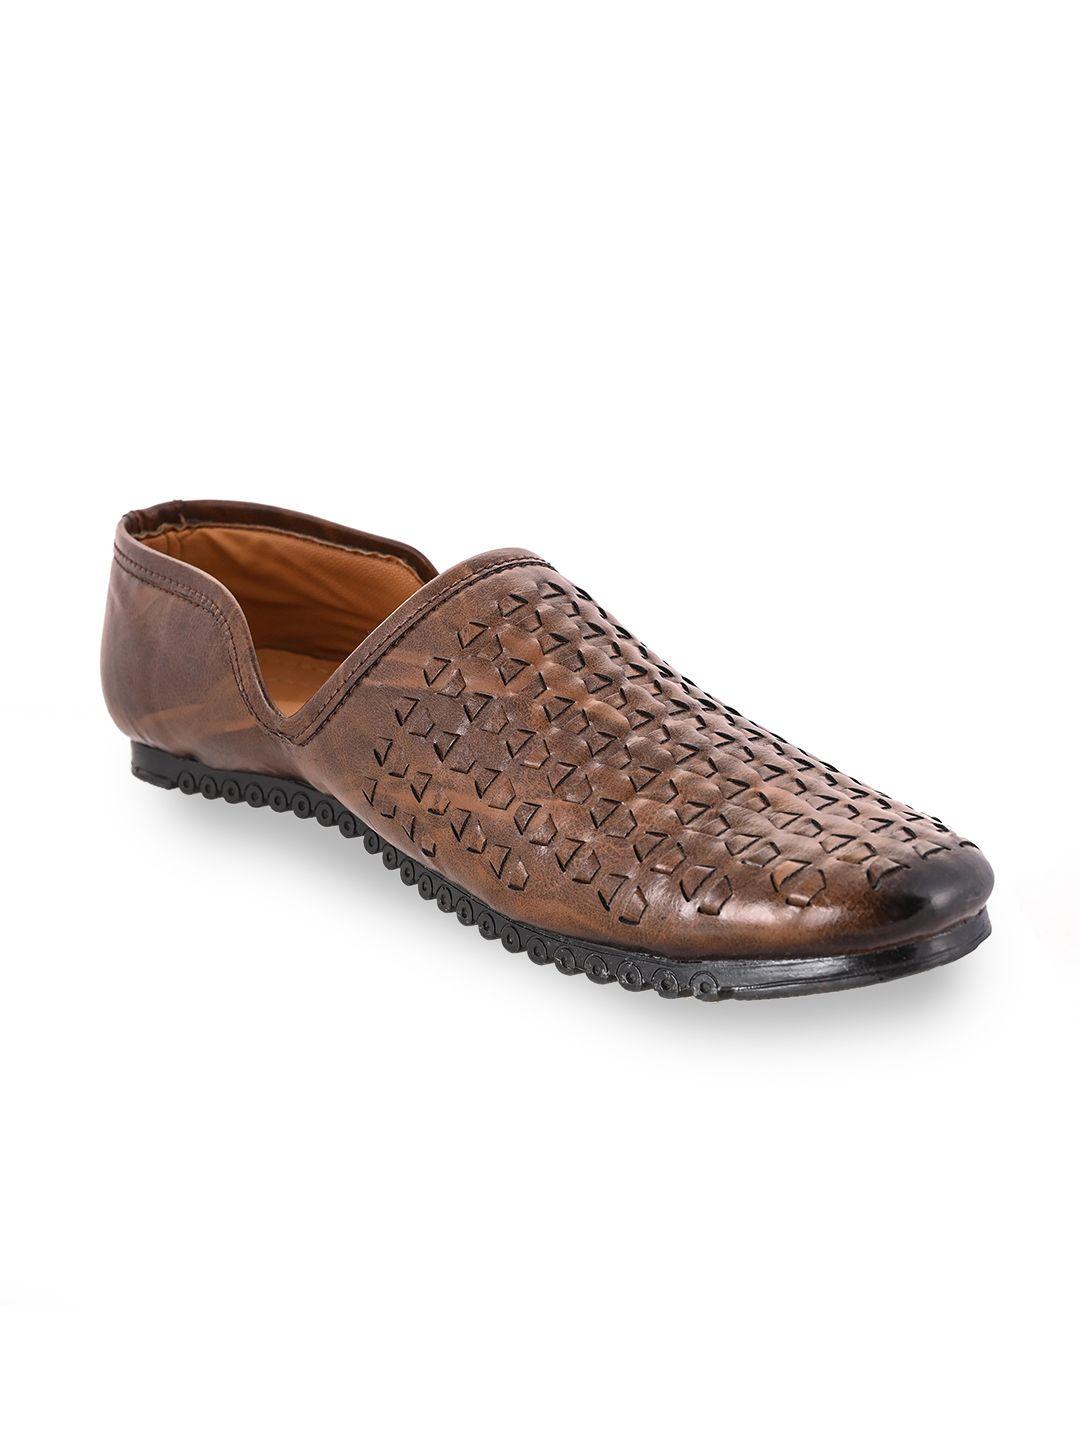 aristitch men brown comfort sandals